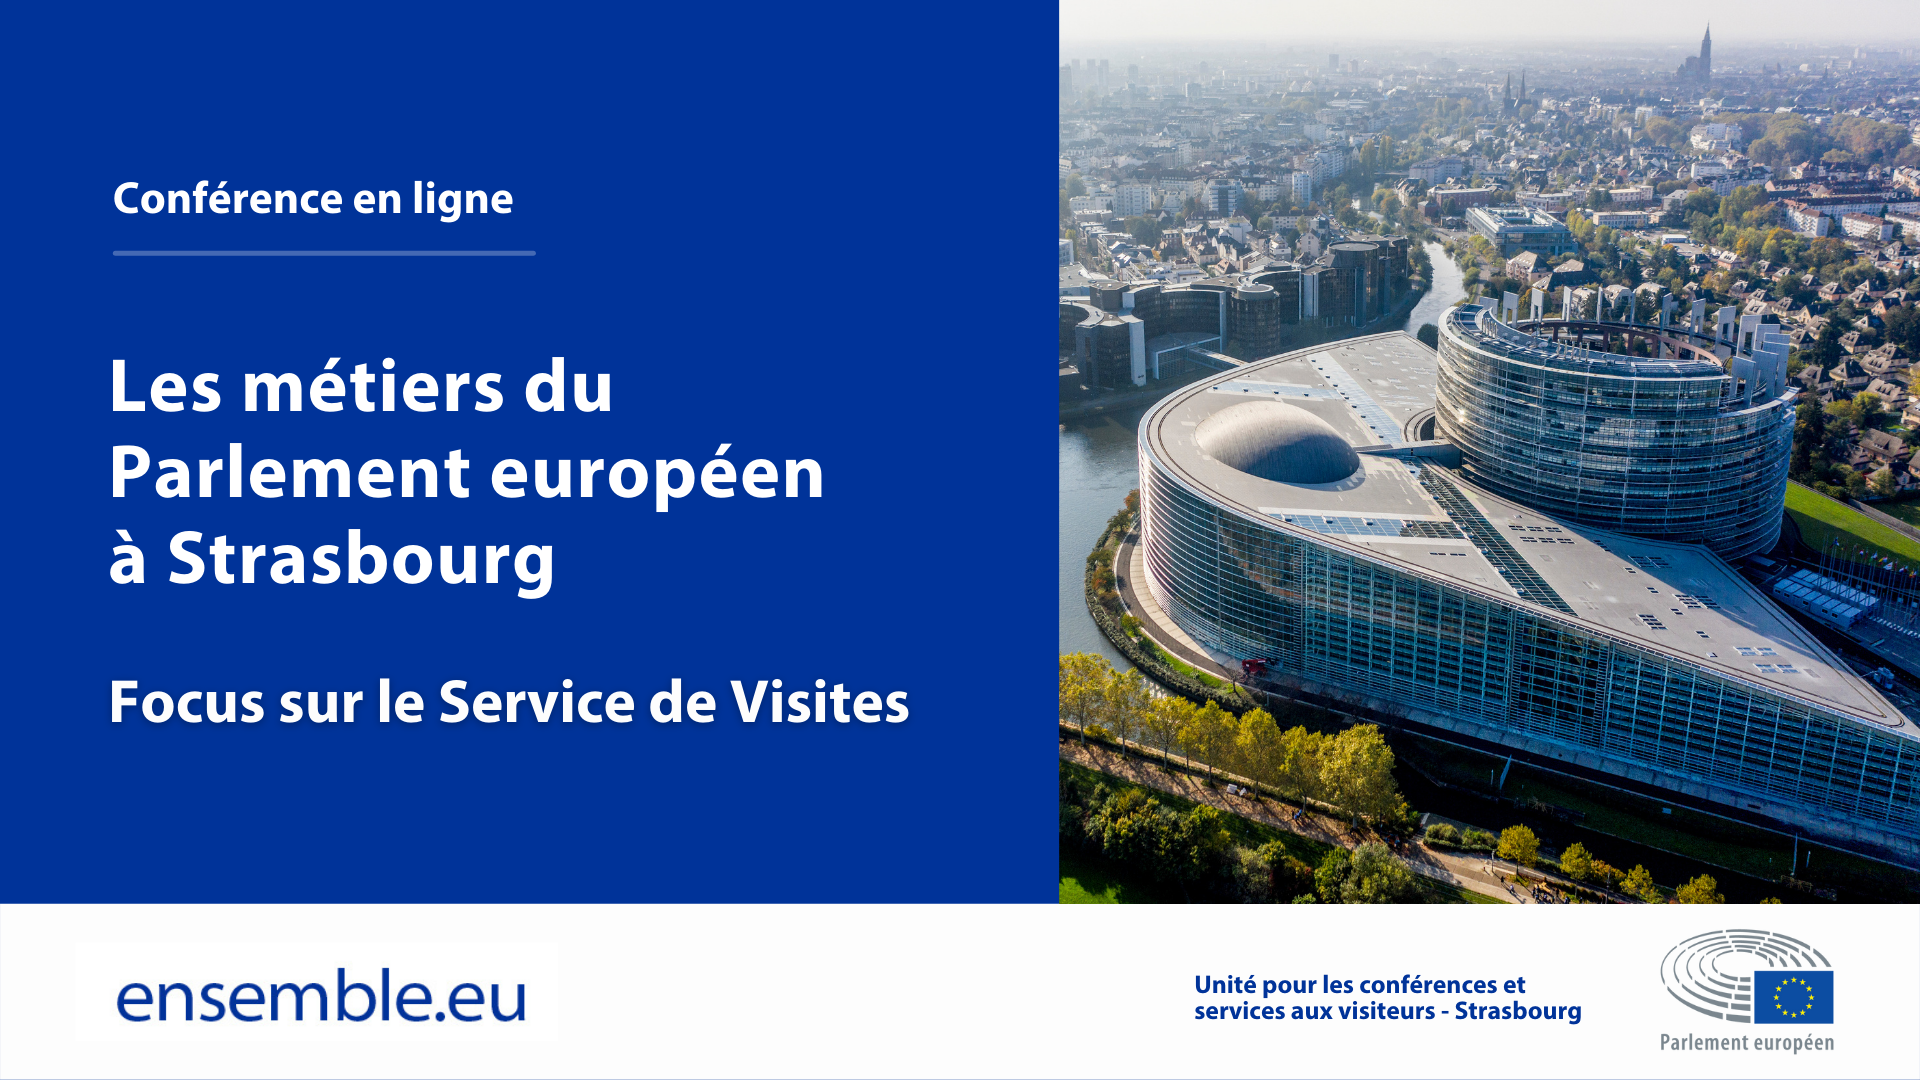 Les métiers du Parlement européen à Strasbourg : Focus sur le Service de Visites